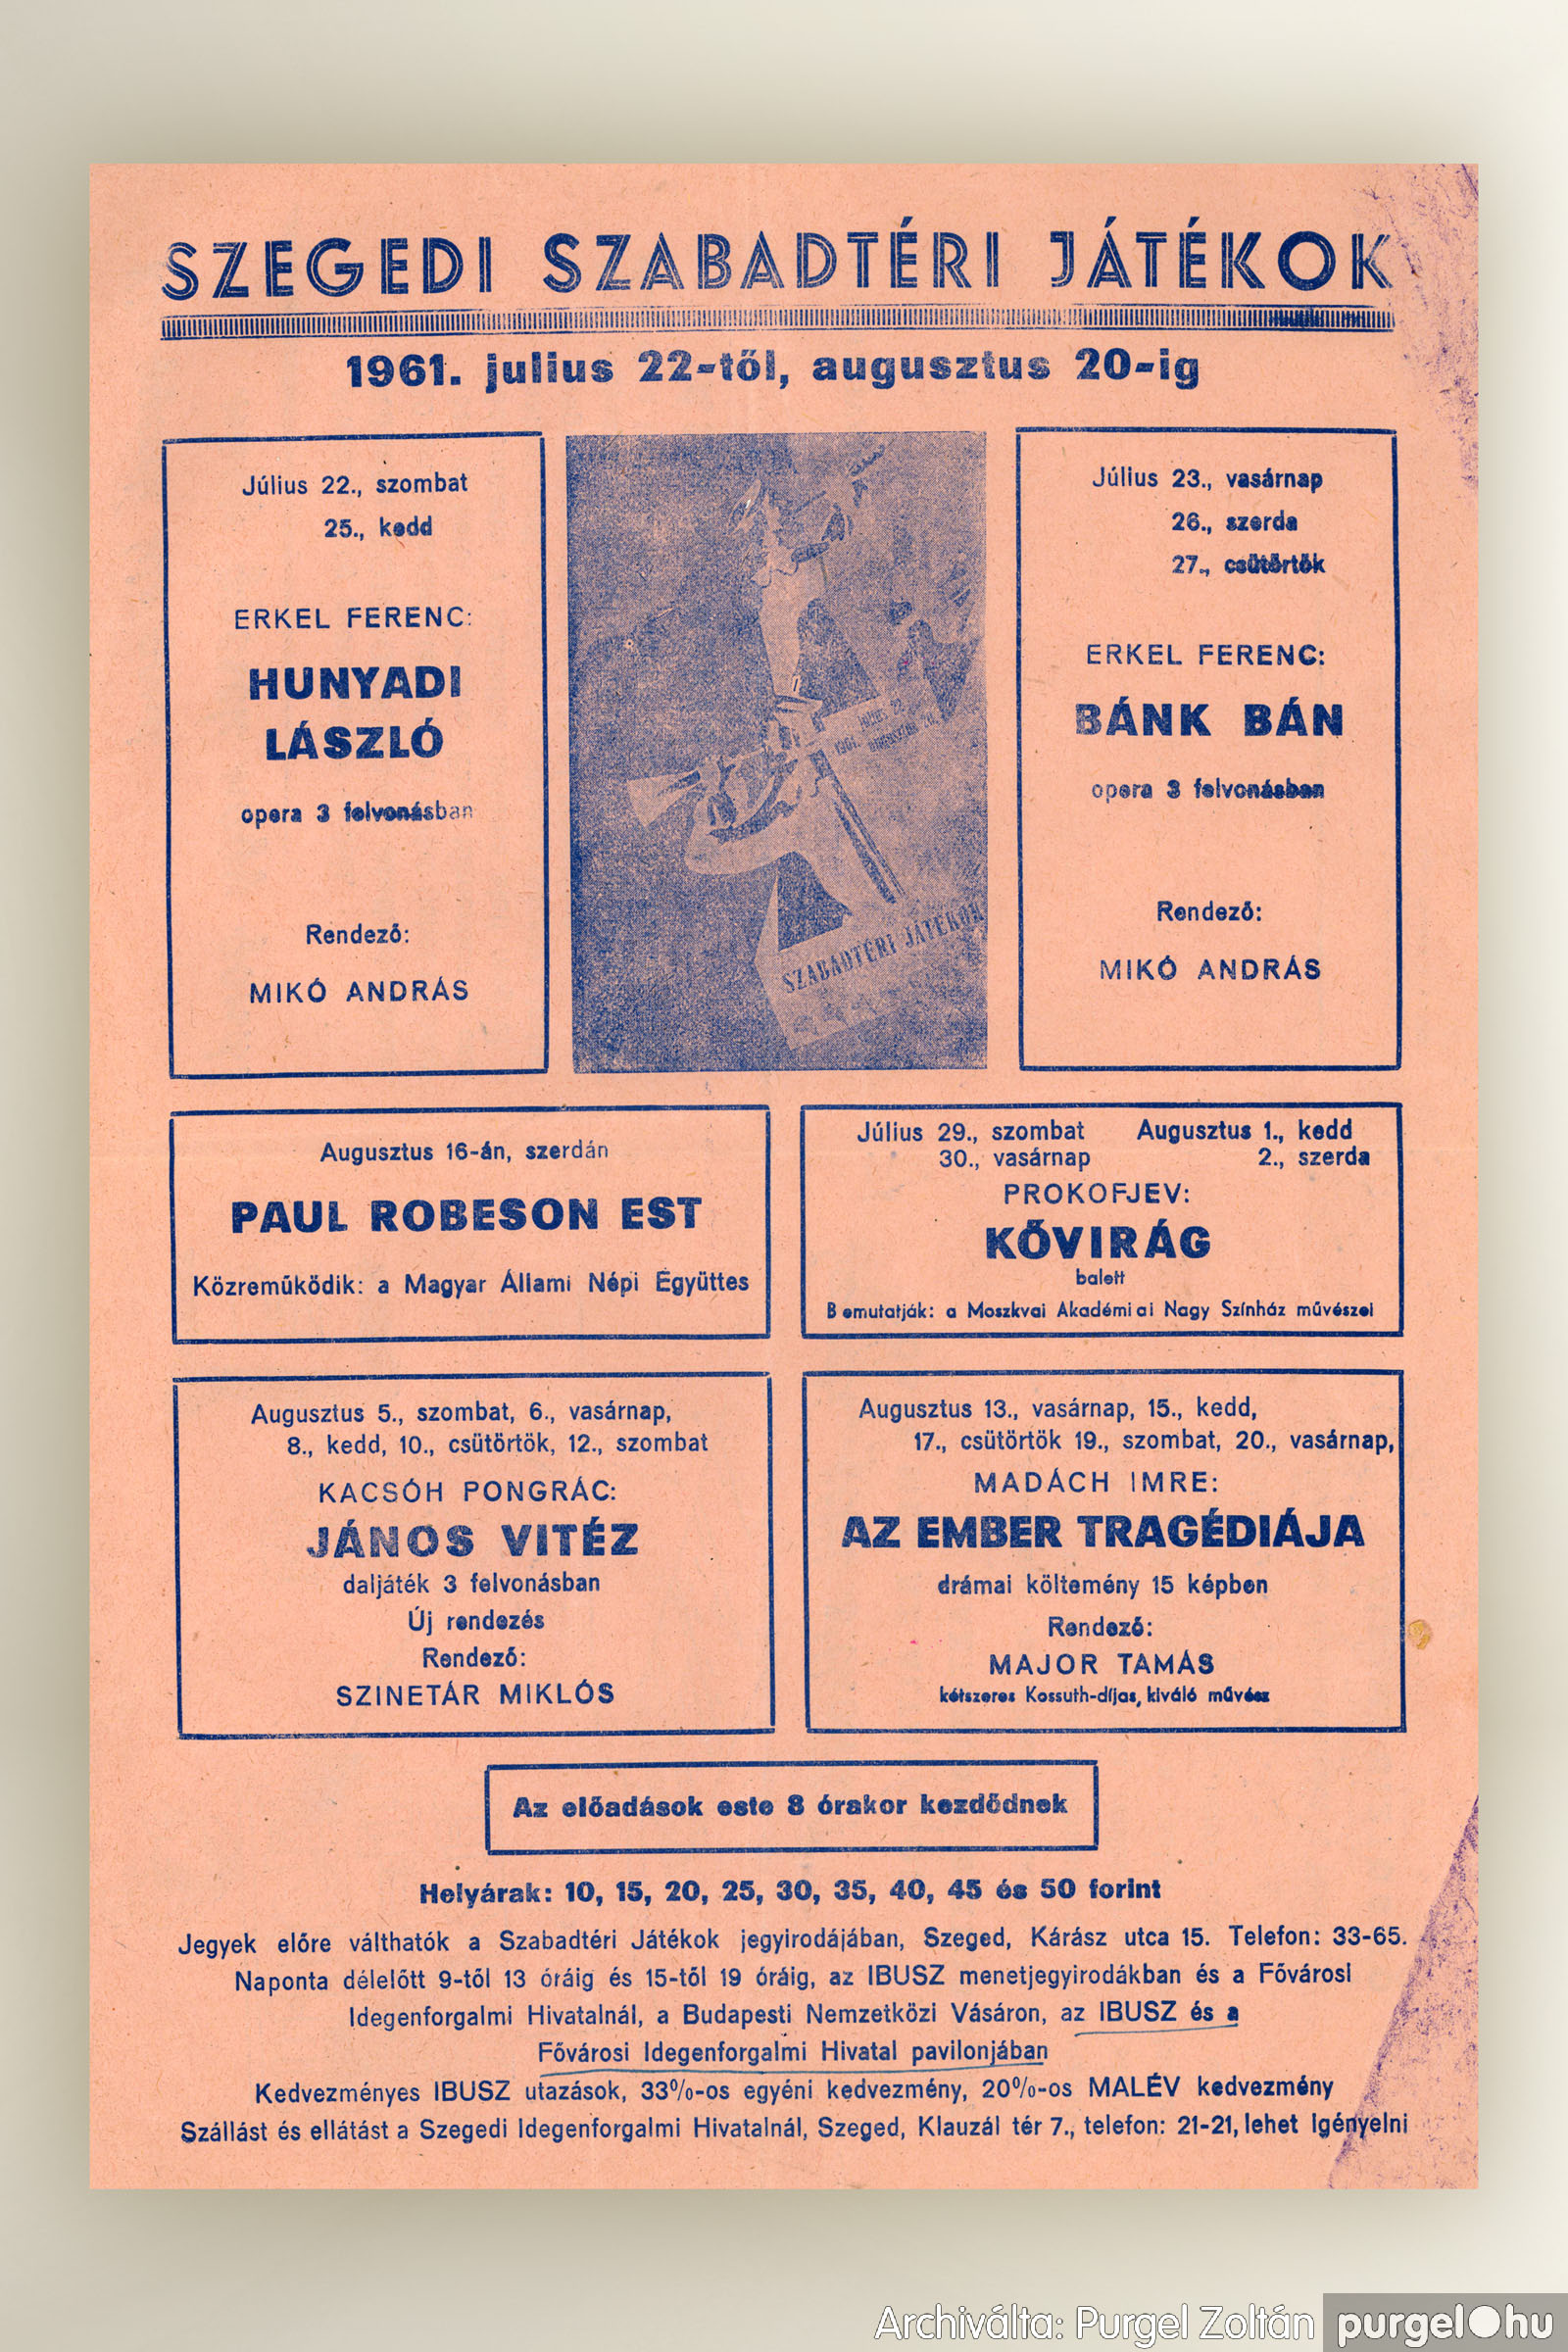 048 Szegedi Szabadtéri Játékok plakát1961 – Archiválta：PU